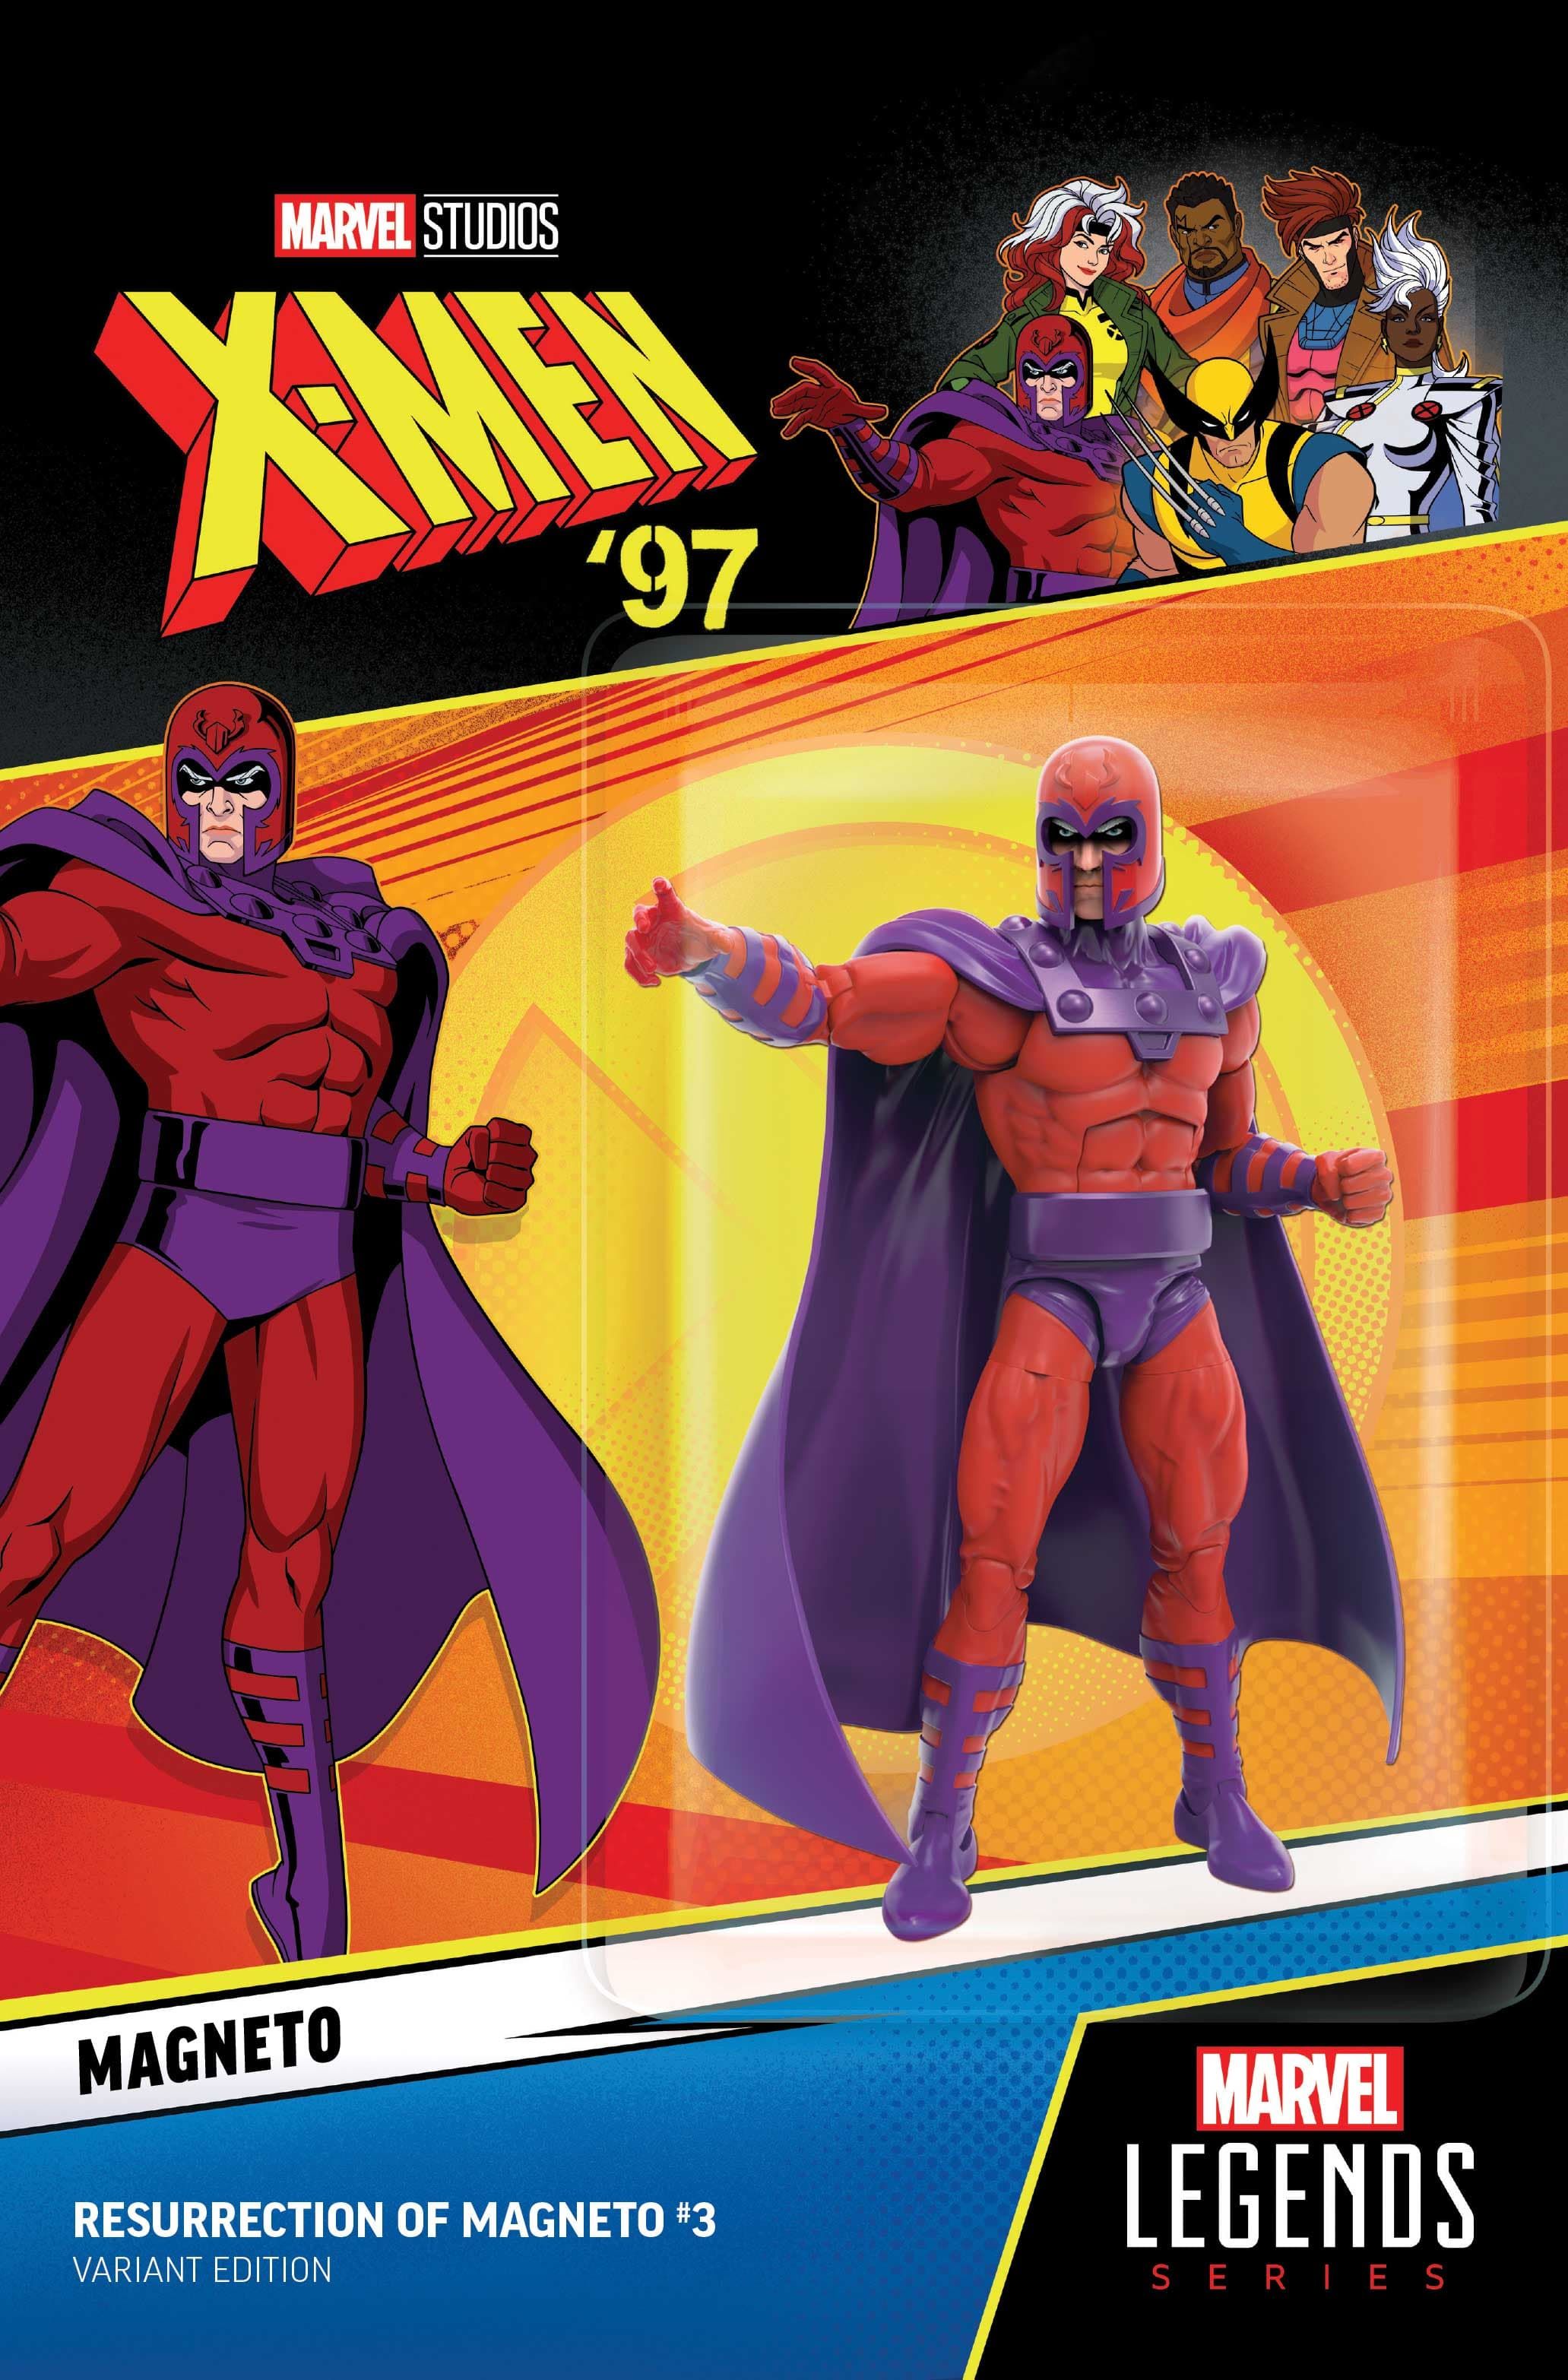 Ressurreição de Magneto #3 X-Men 97 Capa variante de boneco de ação